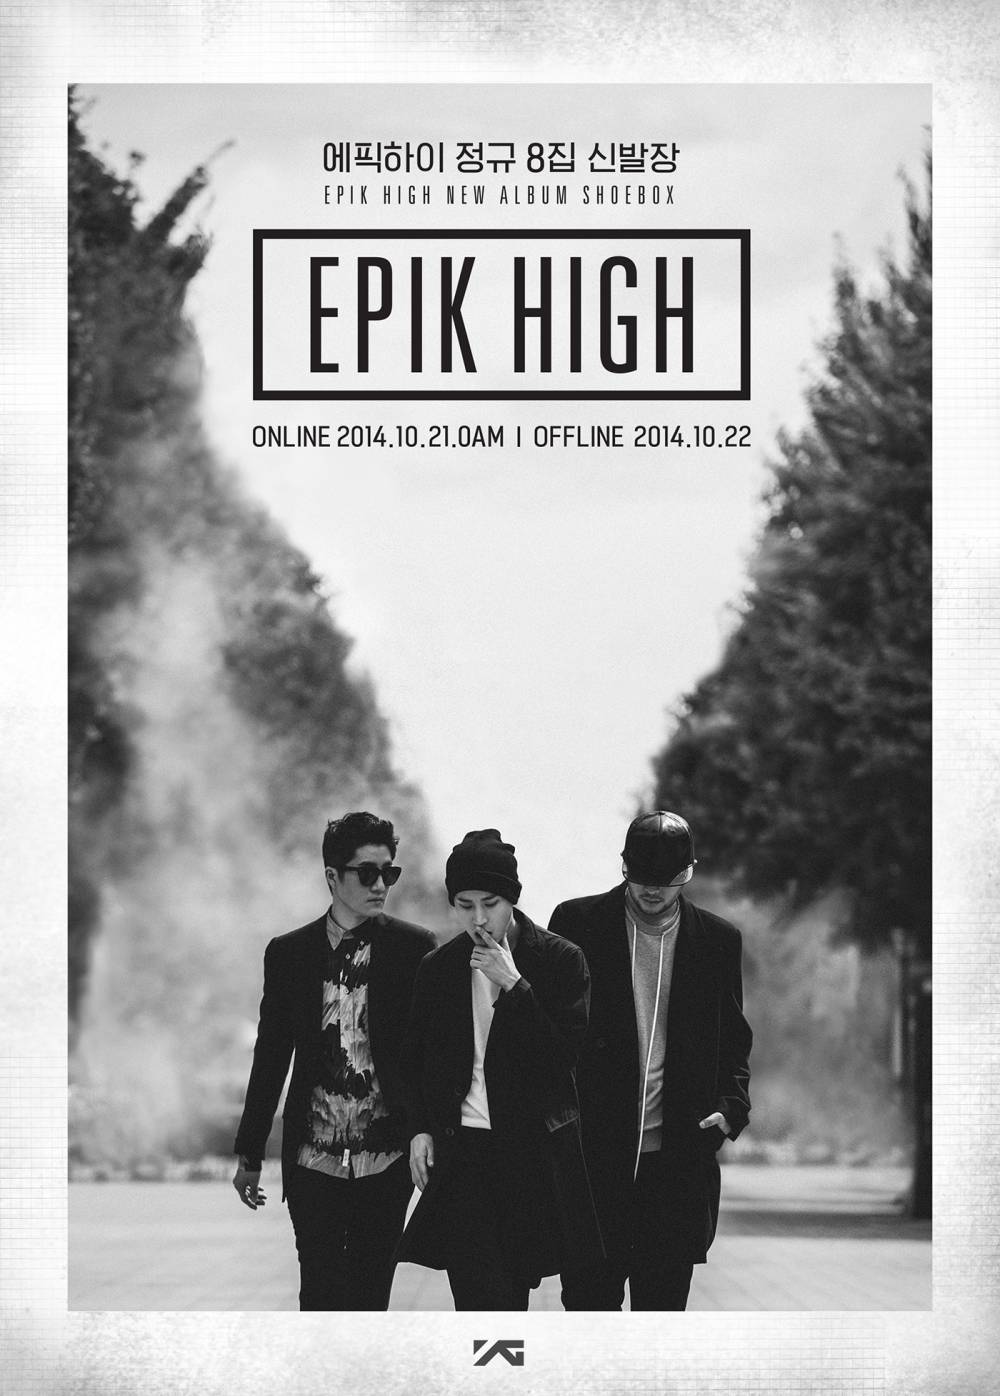 Epik High